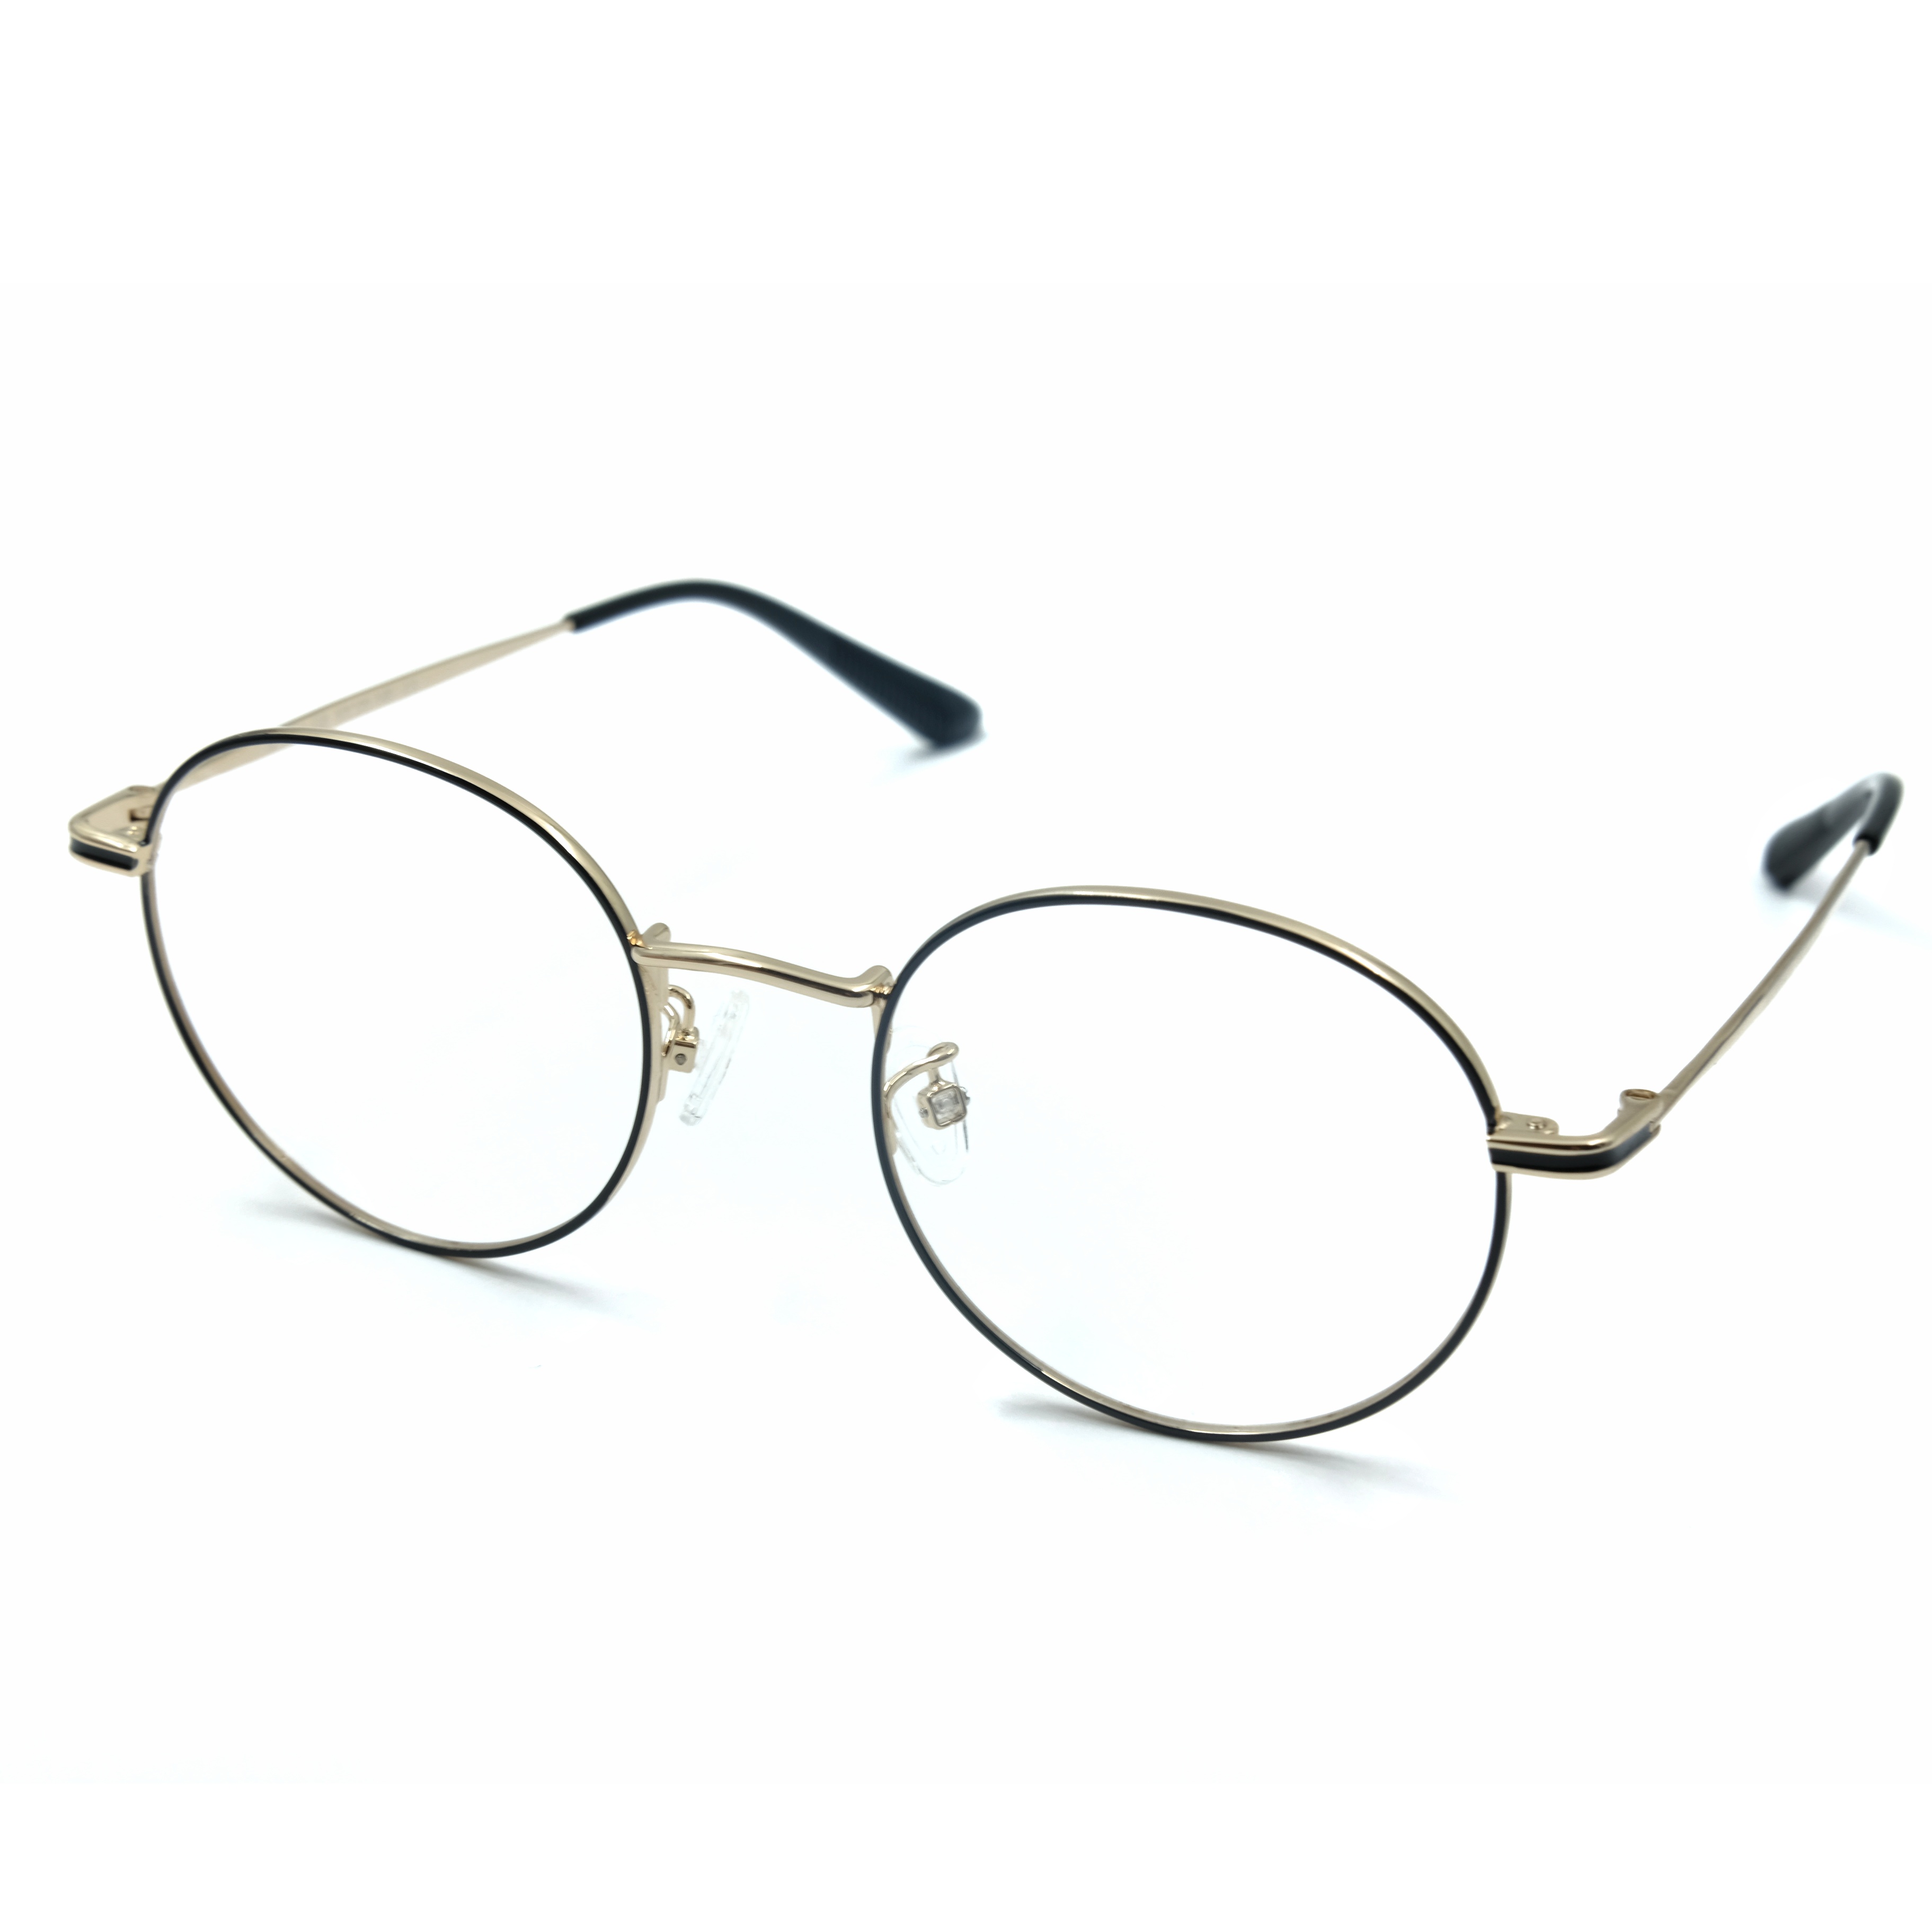 Kids Eyeglasses Frame Child Nearsighted Glasses Blocking Anti Blue Light Glasses River Fashion Optical Frame Full Rim